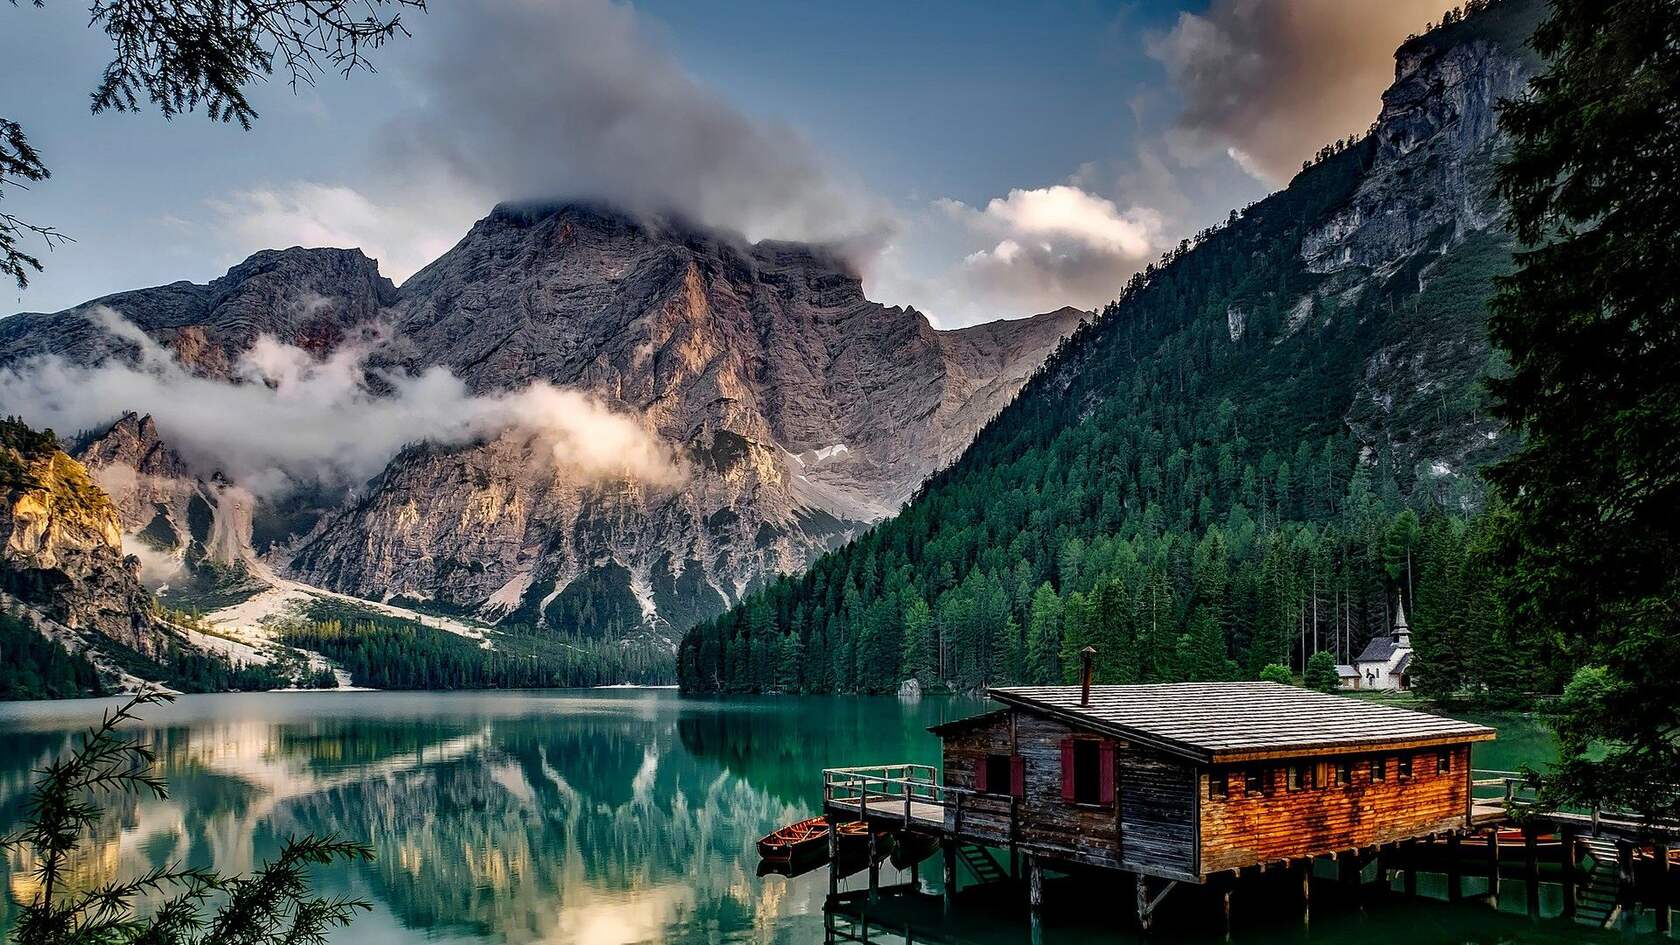 阿尔卑斯山下寂静的水面以及湖边小木屋唯美景色壁纸图片第1张图片